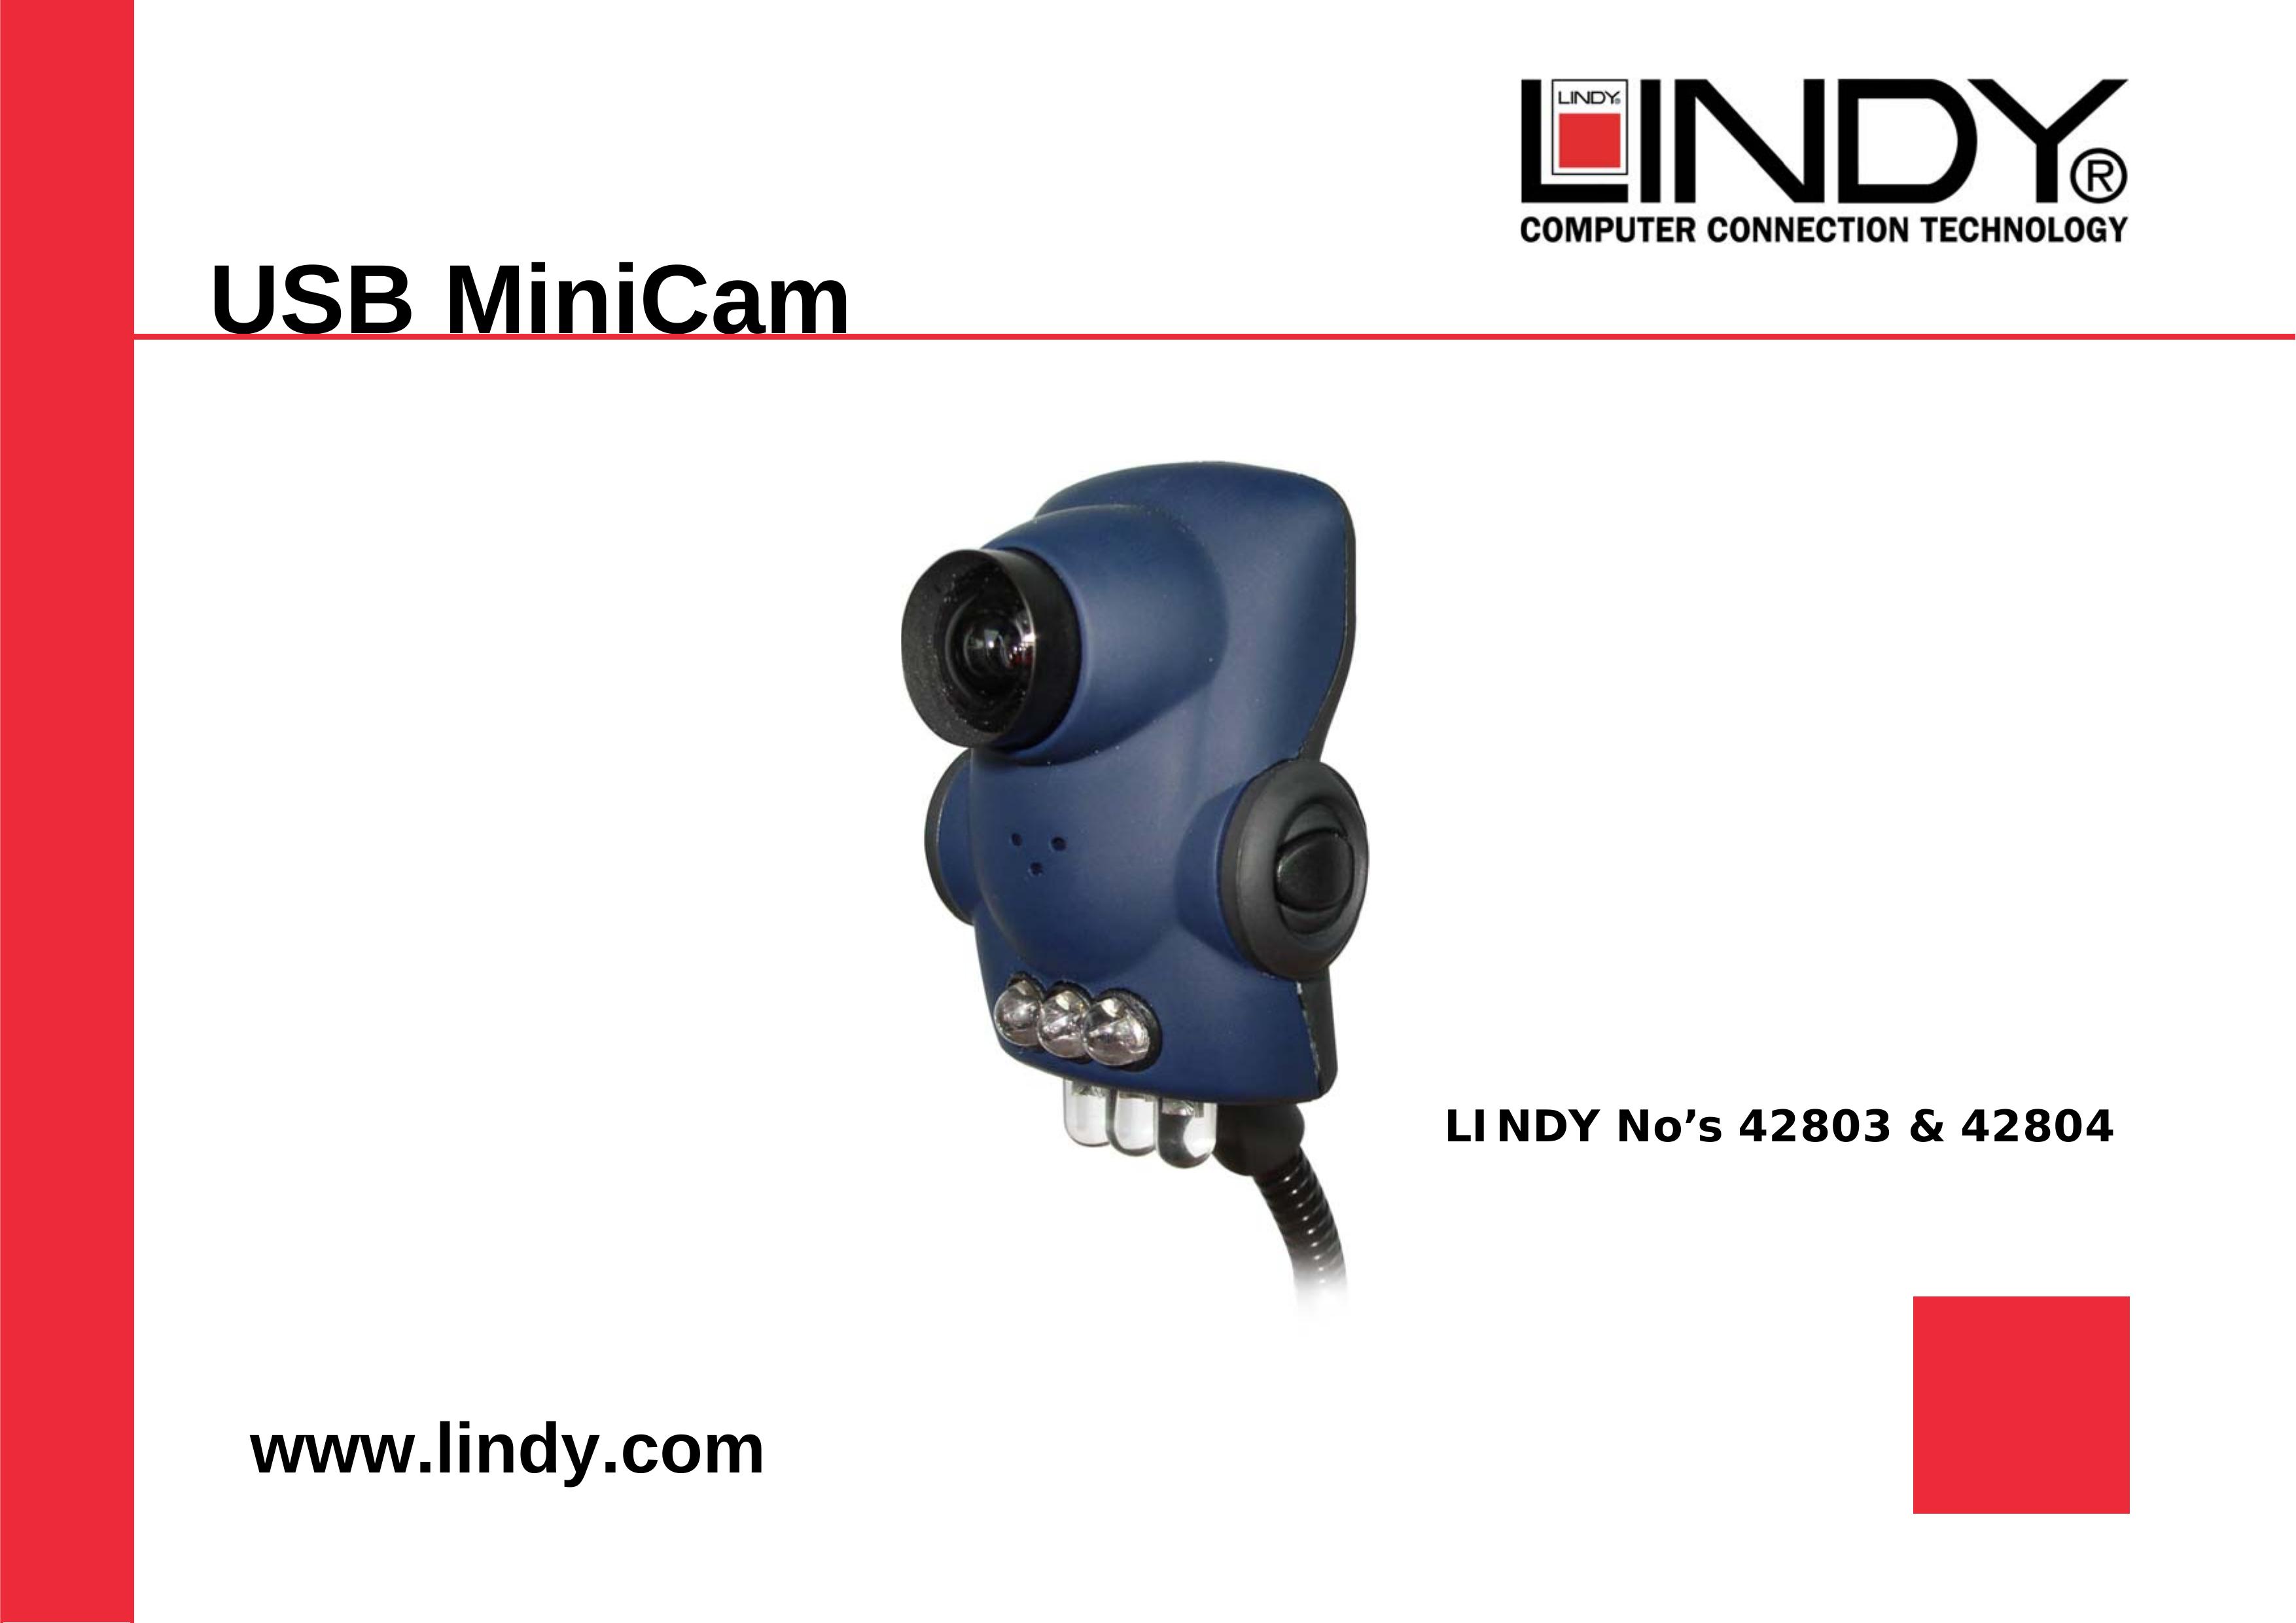 Lindy 42804 Digital Camera User Manual